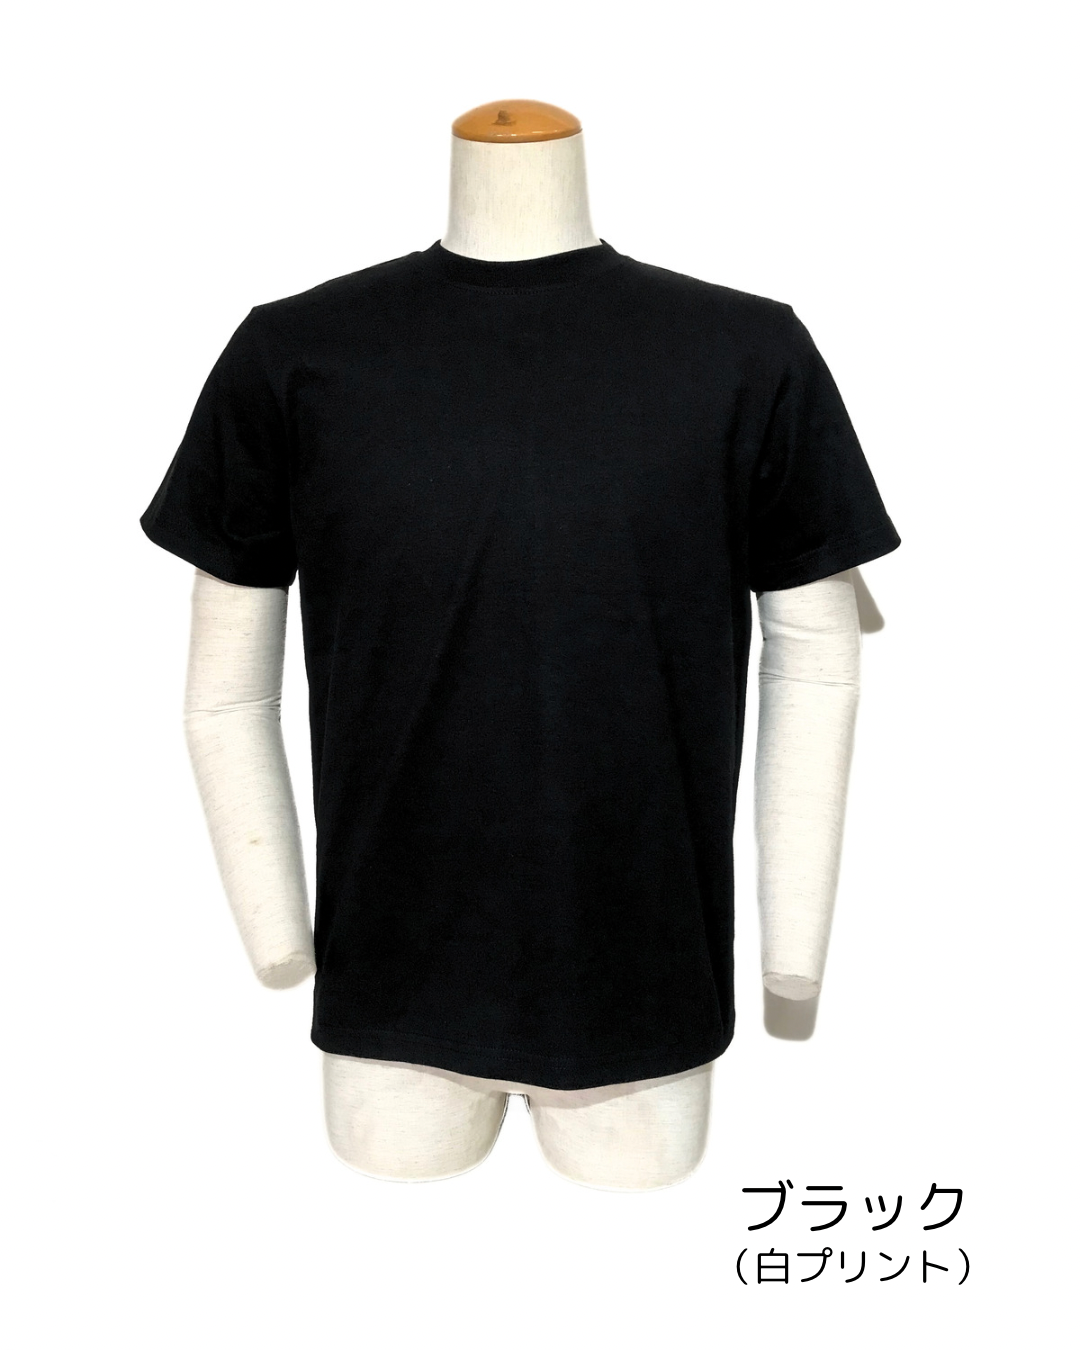 神蔵–KAGURA– 今日もありがとう39（サンキュー）Tシャツ